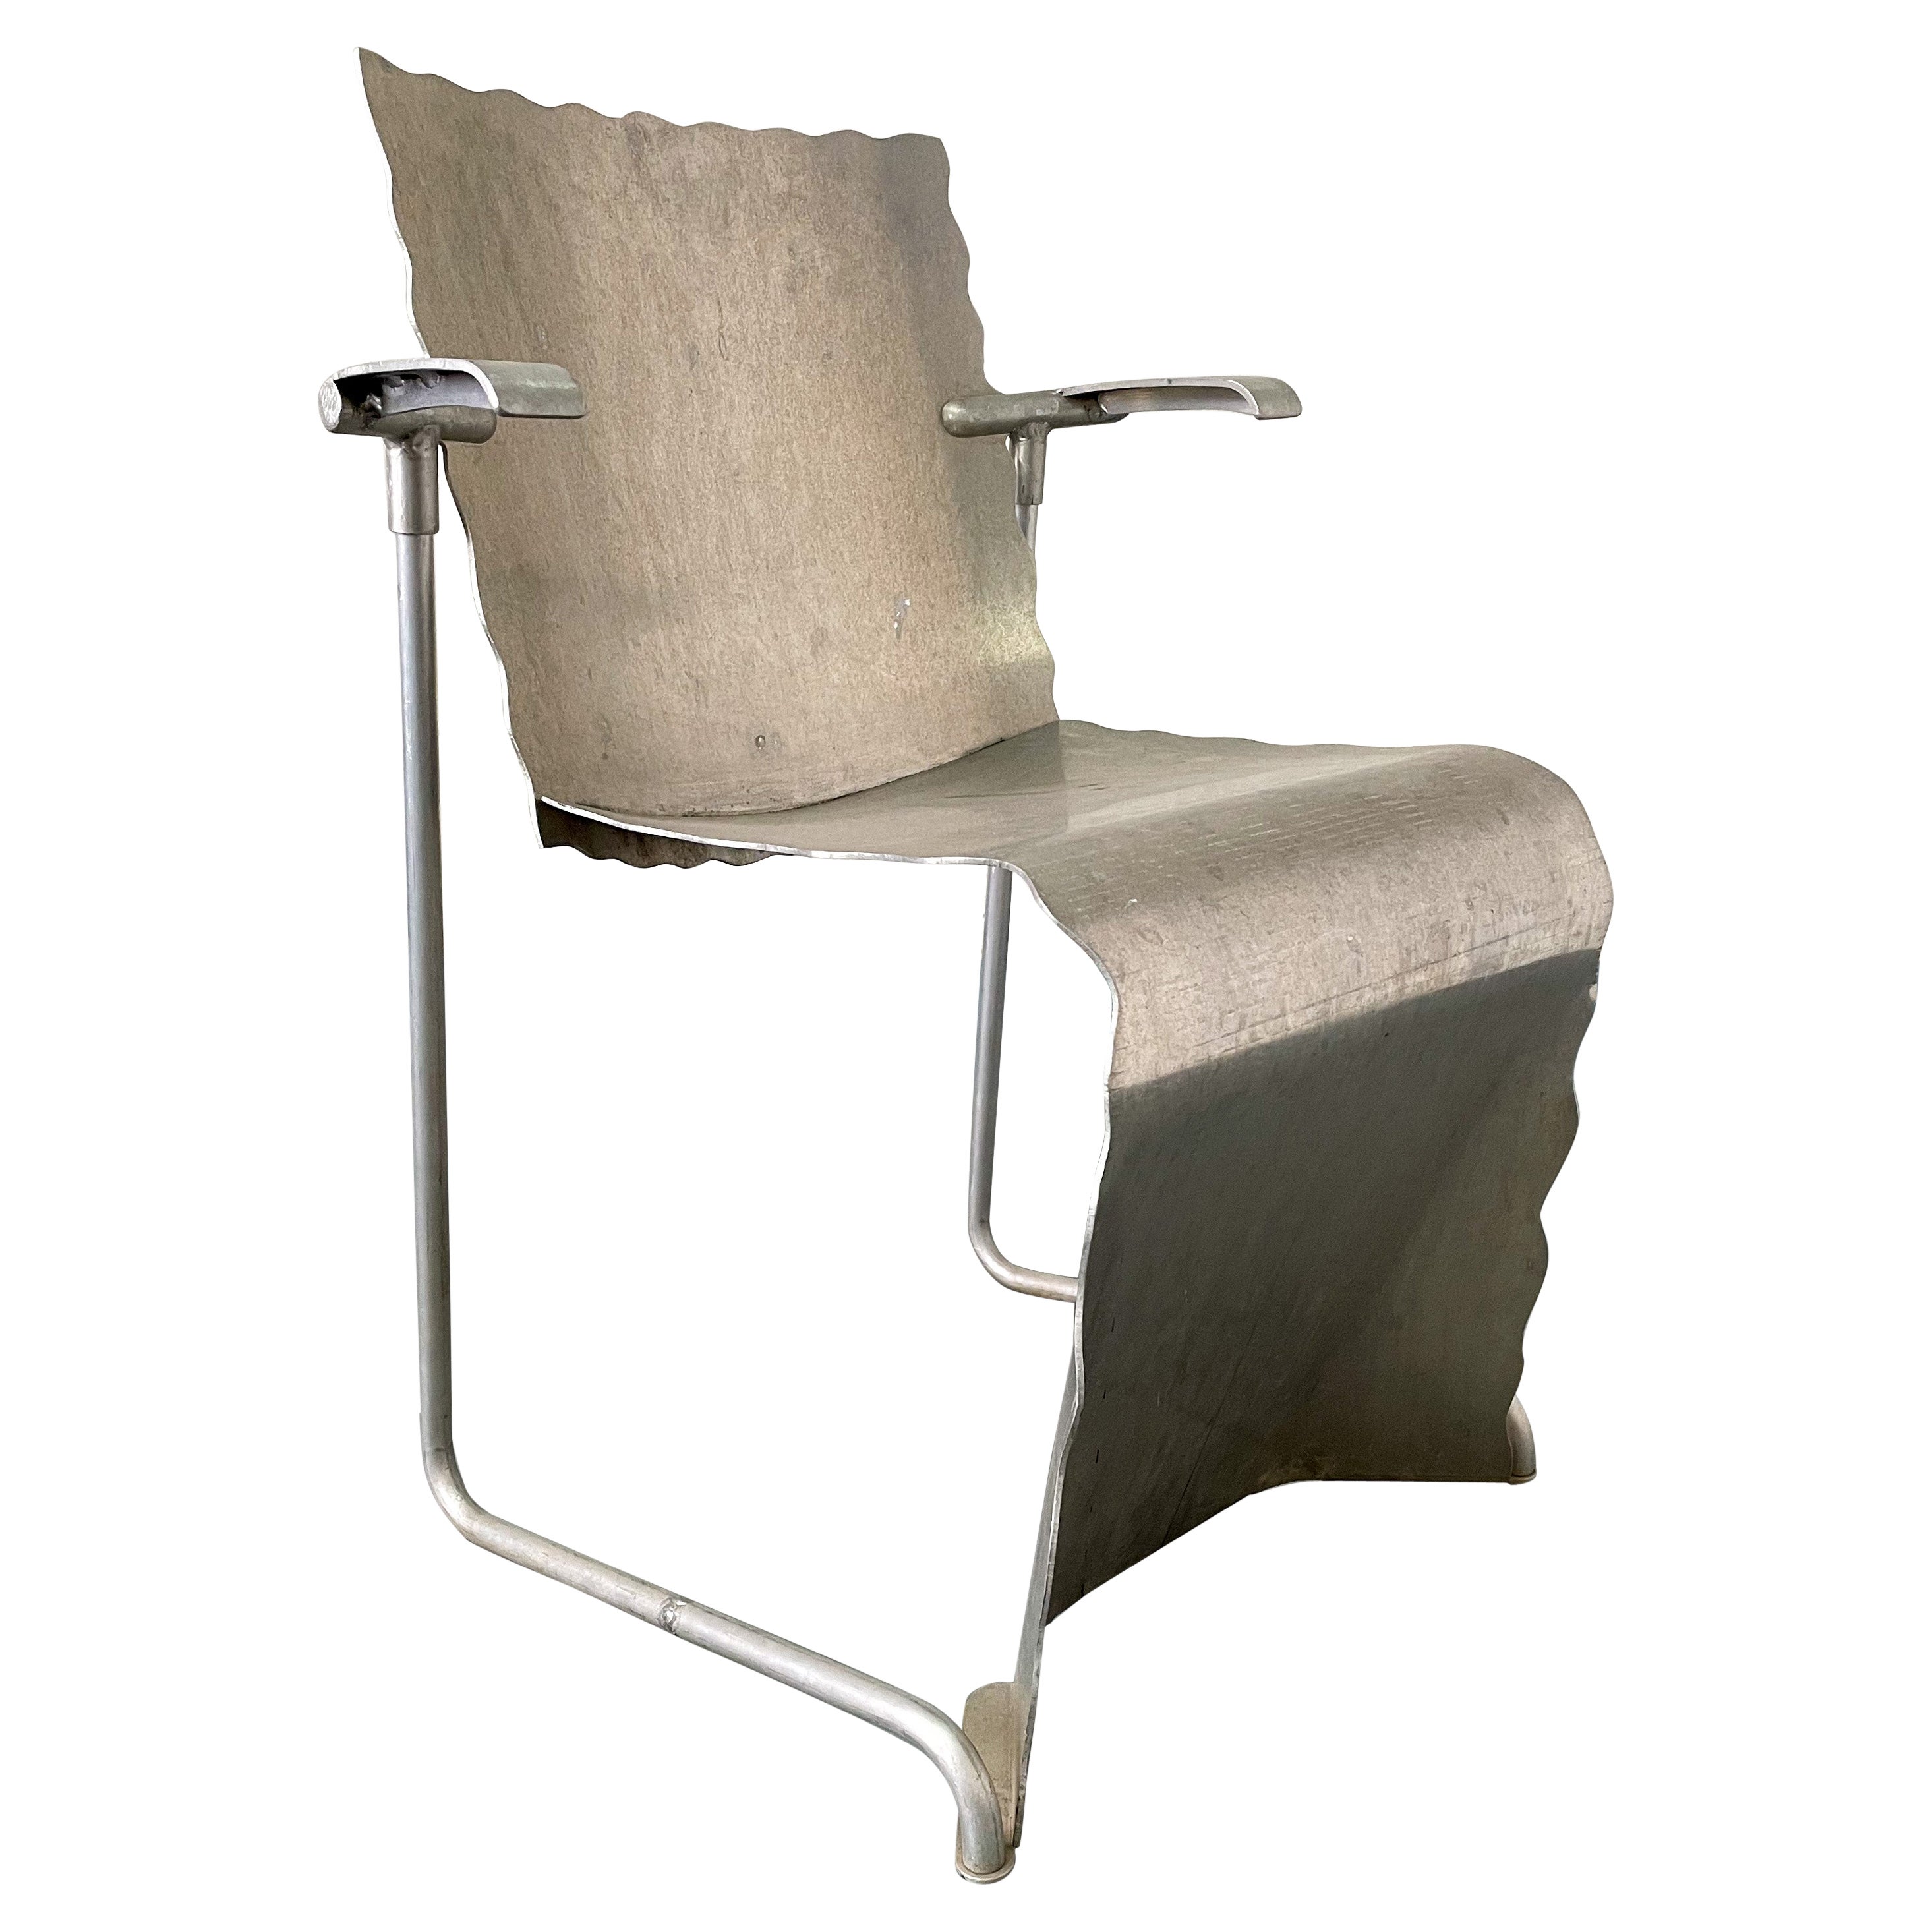 Richard Schultz Prototype de chaise empilable en aluminium #2